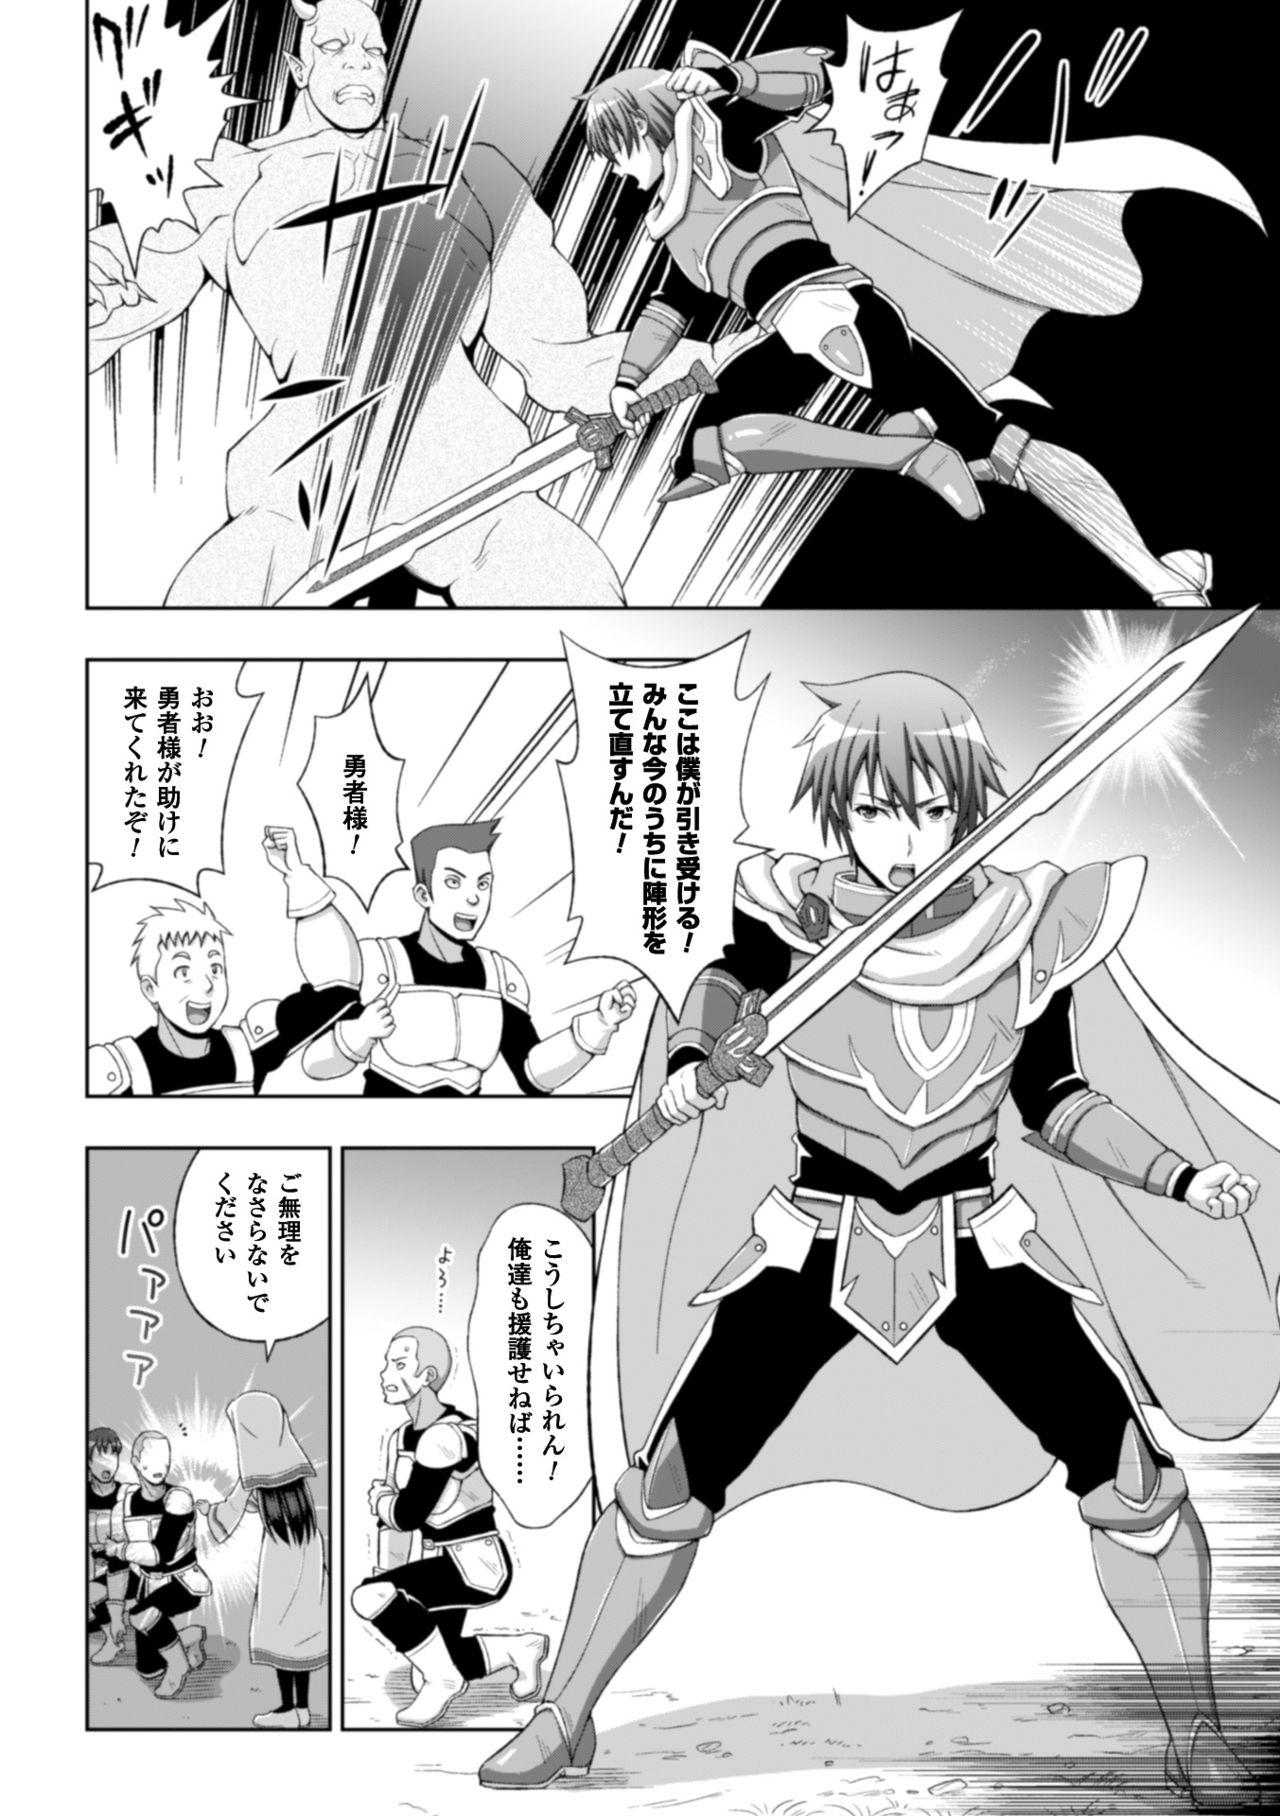 Seigi no Heroine Kangoku File Vol. 8 7